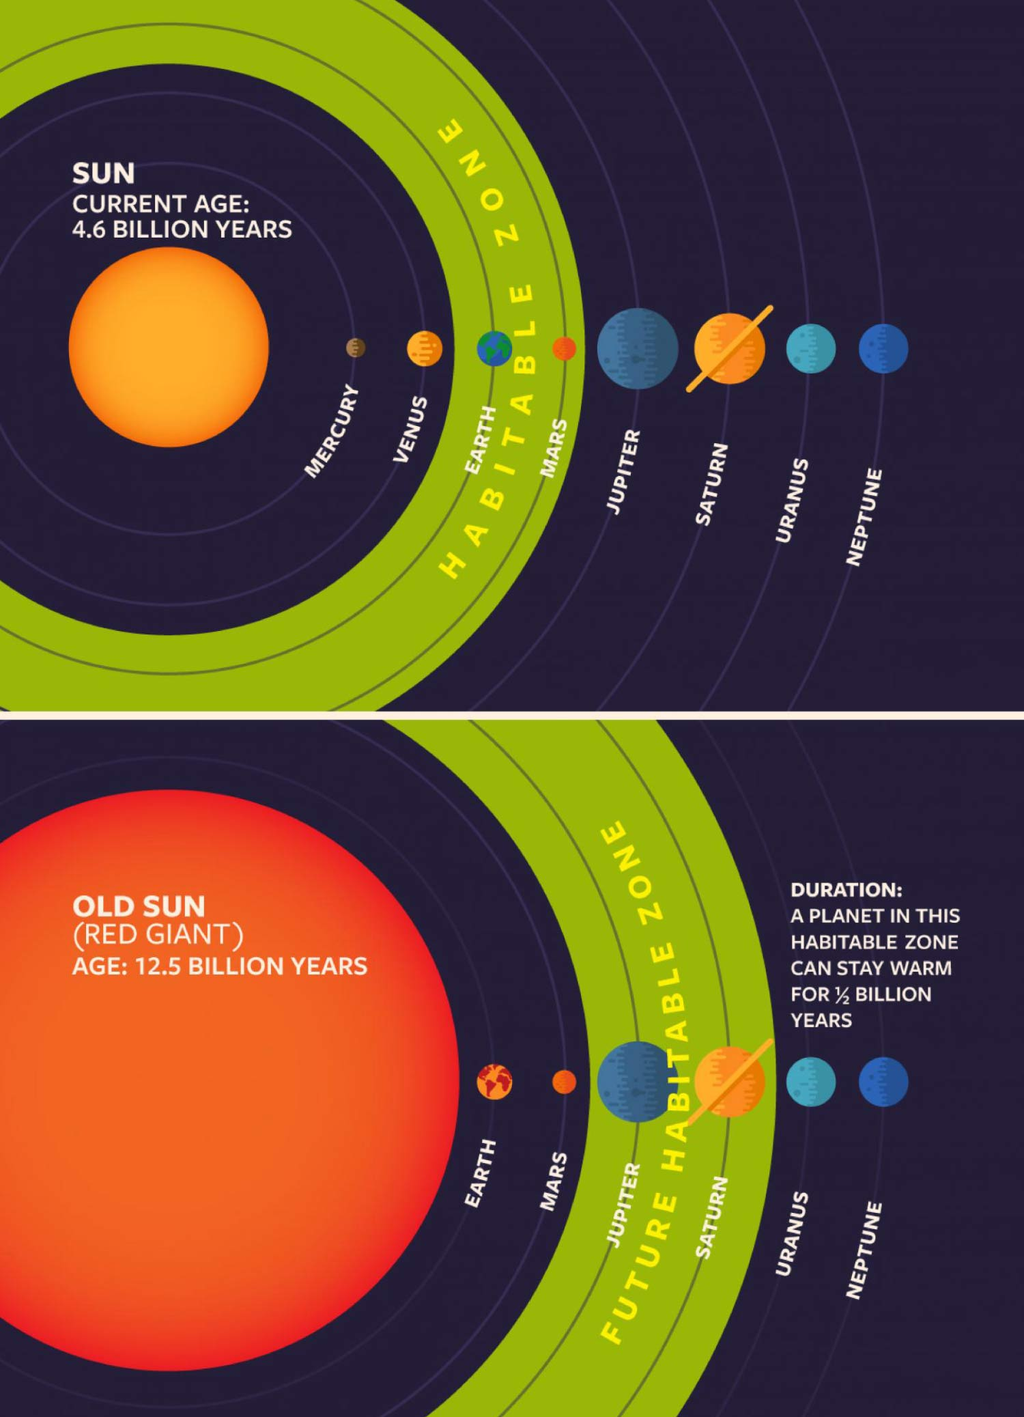 Comparação da zona habitável atual do Sistema Solar com o Sol enquanto gigante vermelha, que irá "empurrá-la" (Imagem: Reprodução/Cornell University)